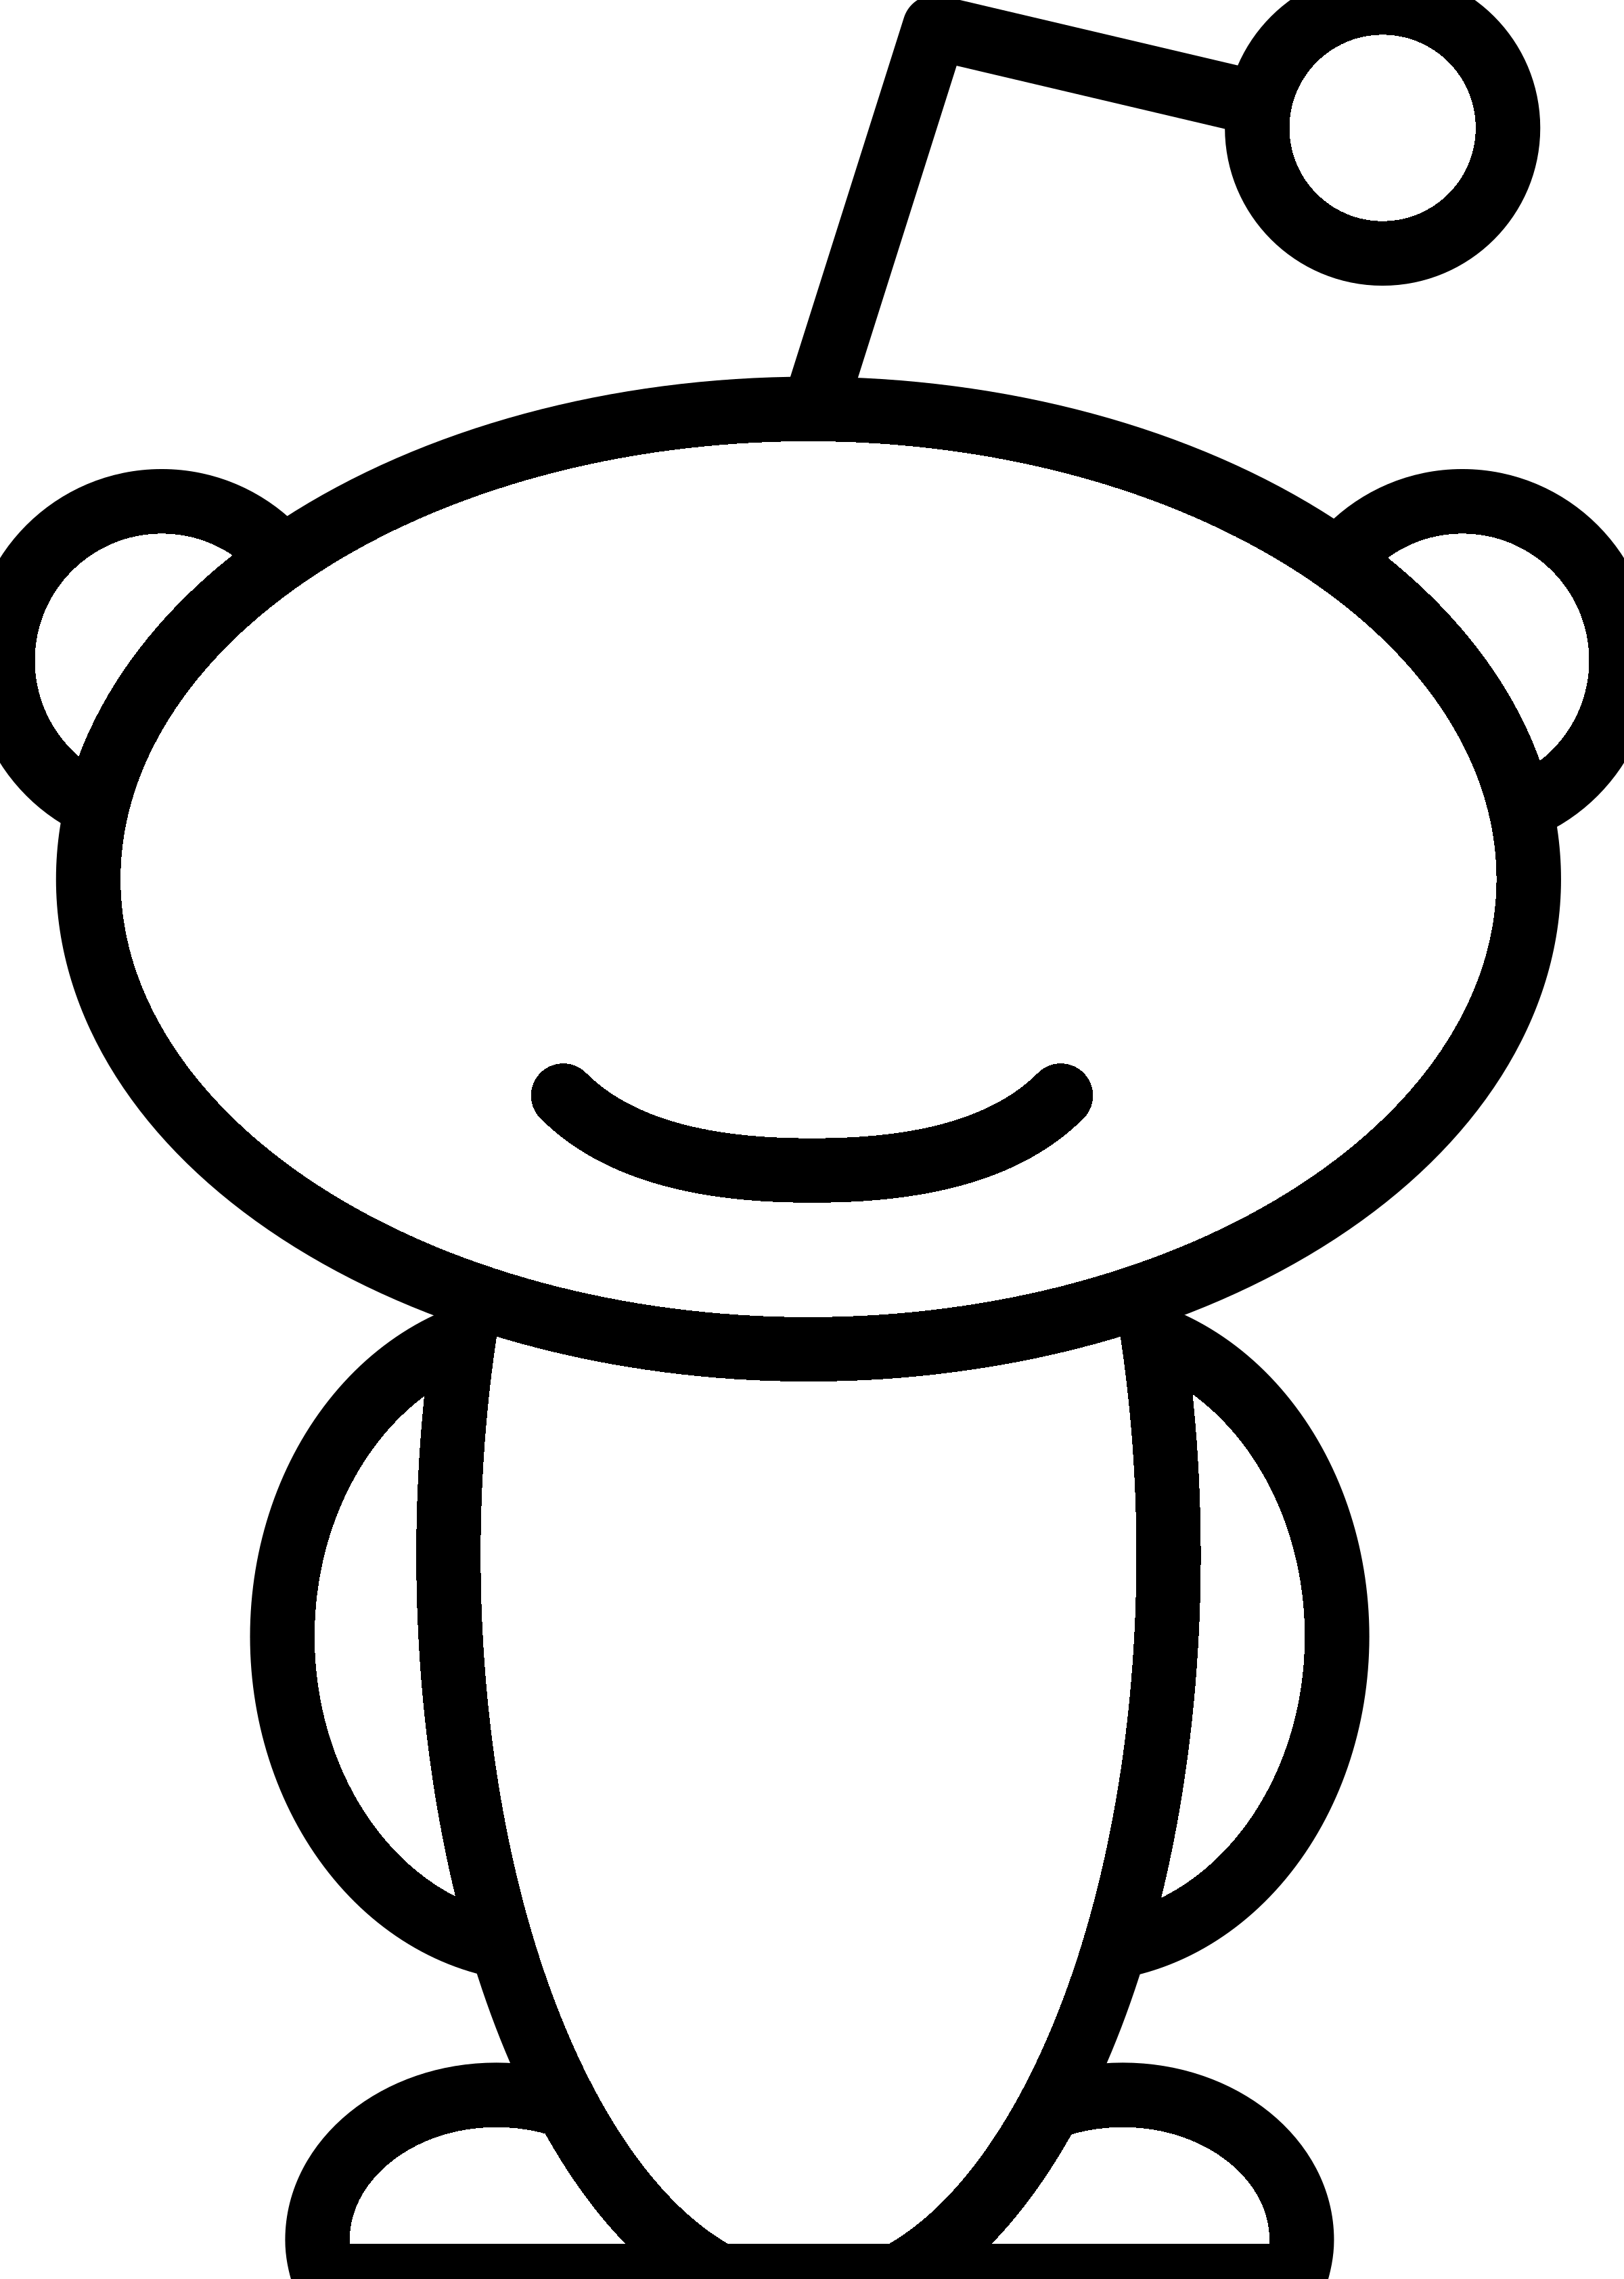 Black and White Alien Logo - Reddit Alien Logo PNG Transparent & SVG Vector